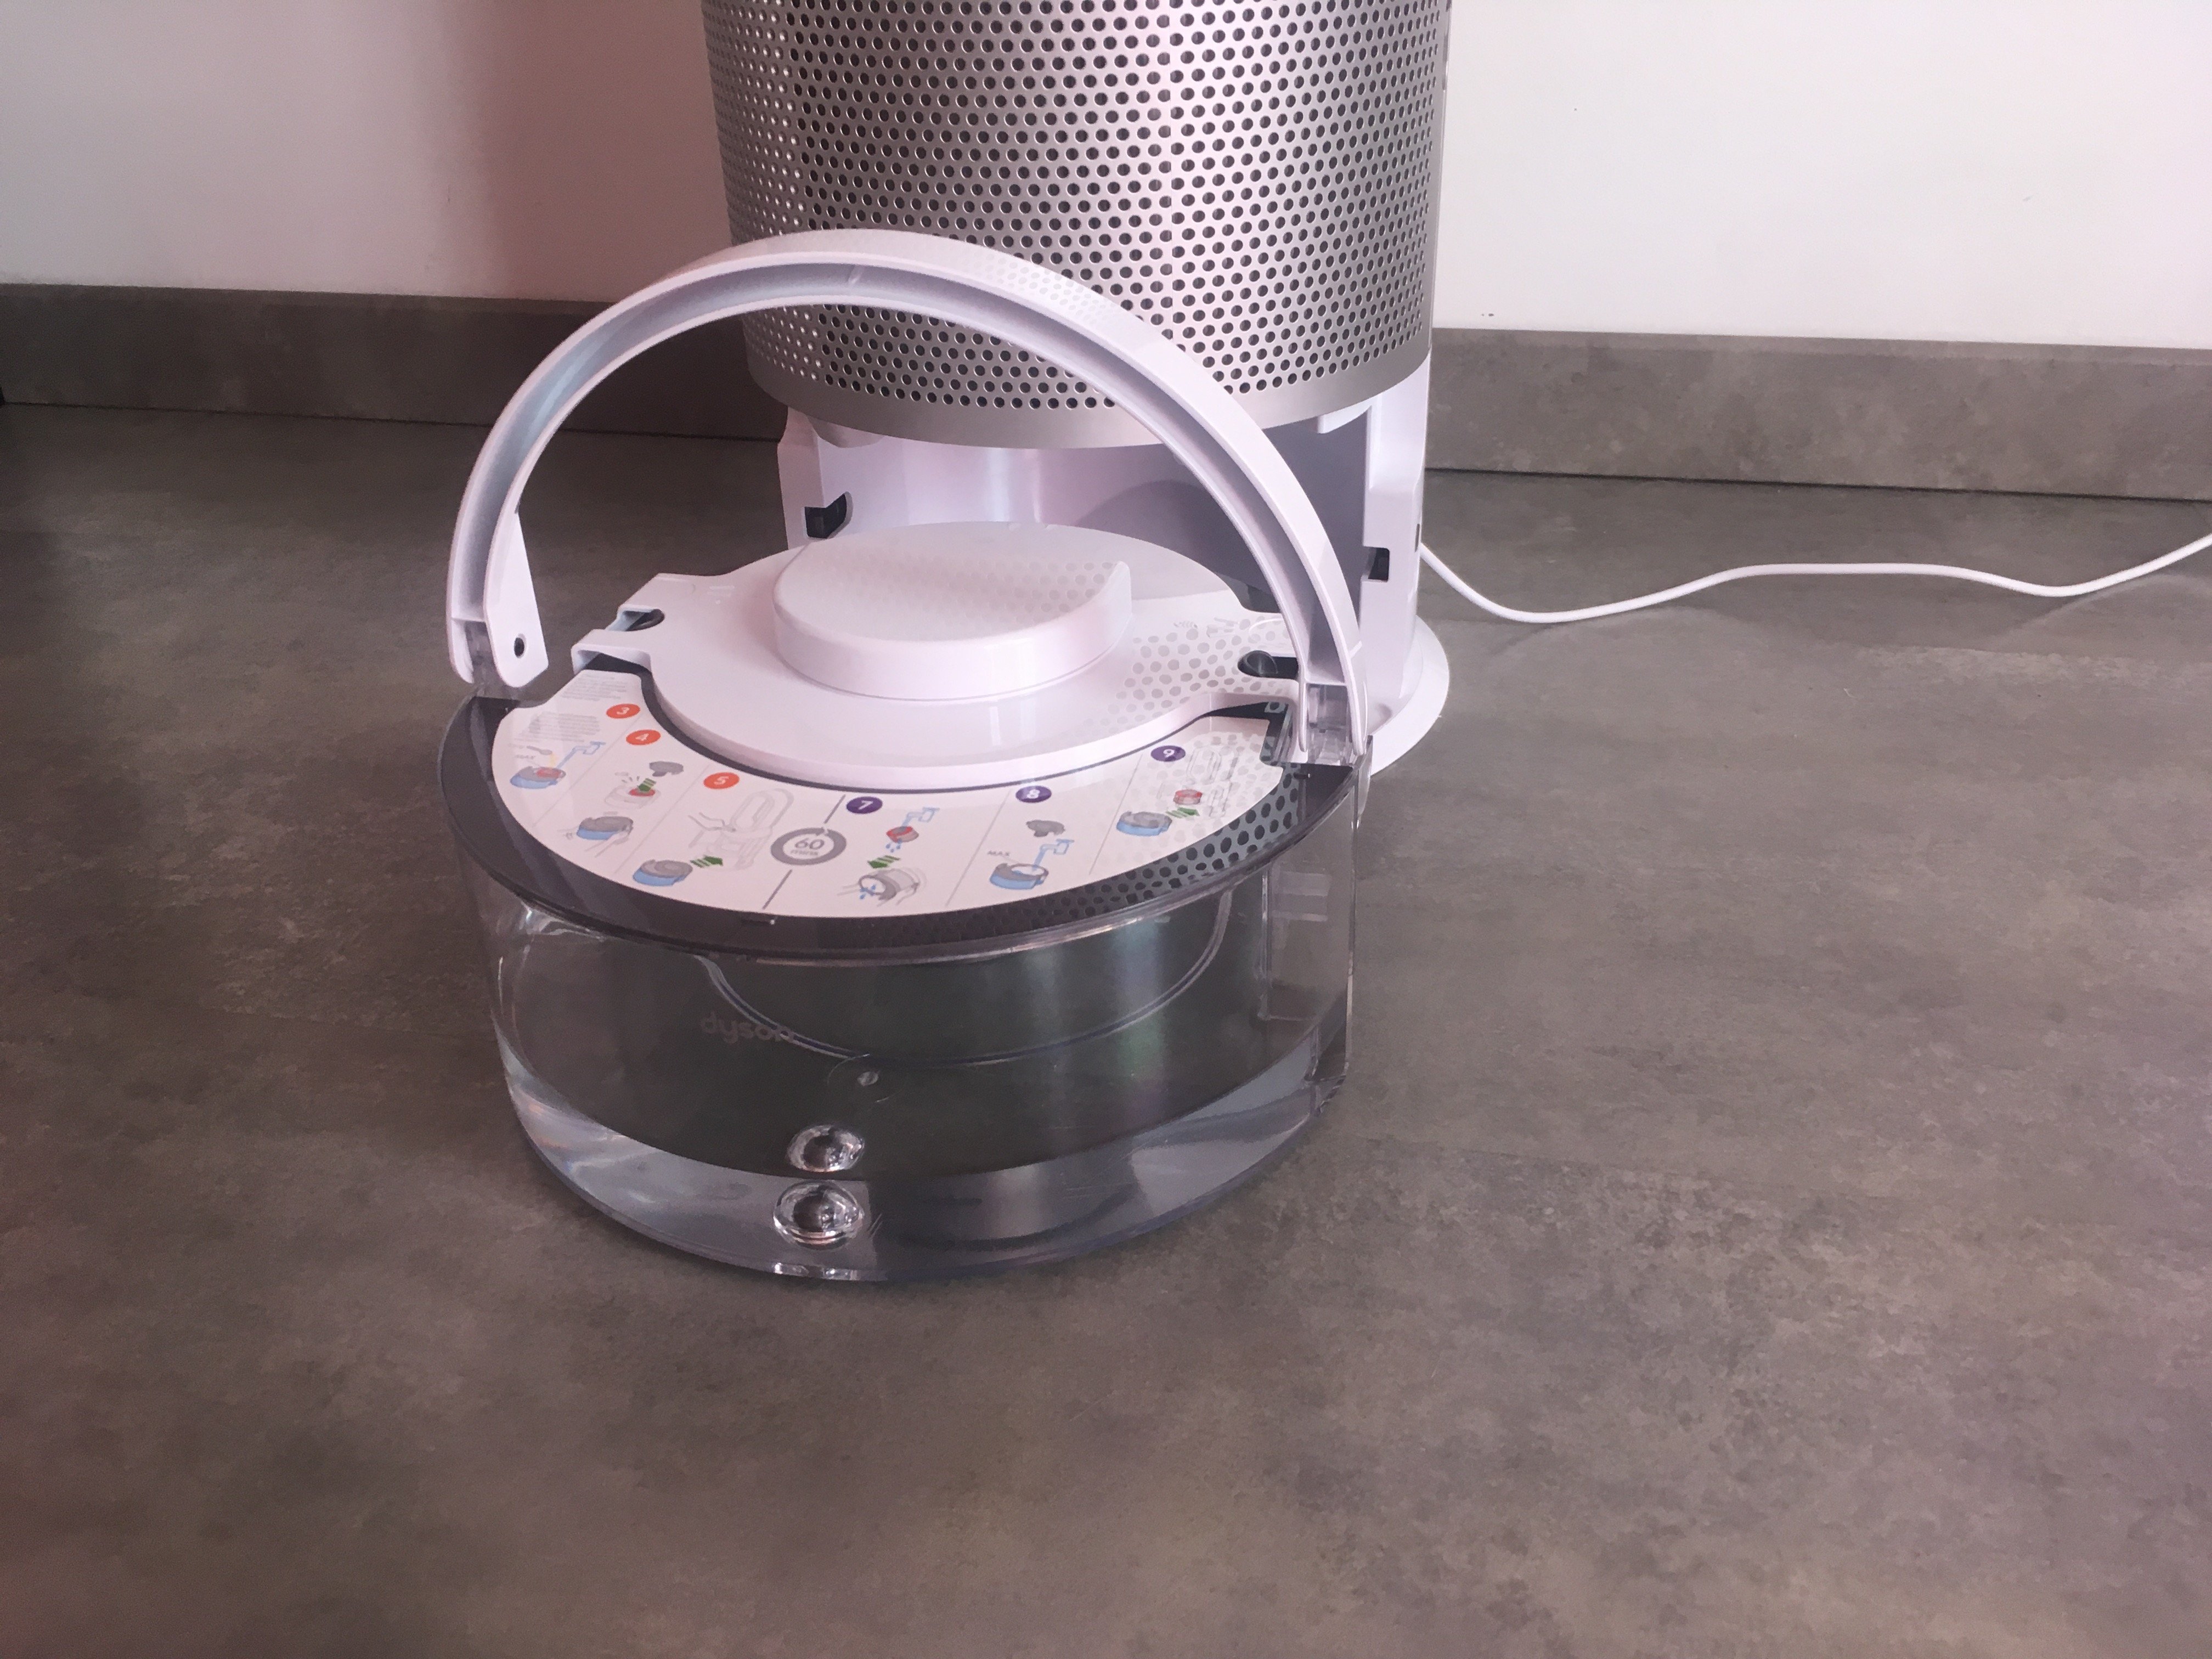 Purificateur d'air Purifier Humidify + Cool PH03 de Dyson avec filtre HEPA  - Blanc/Argenté